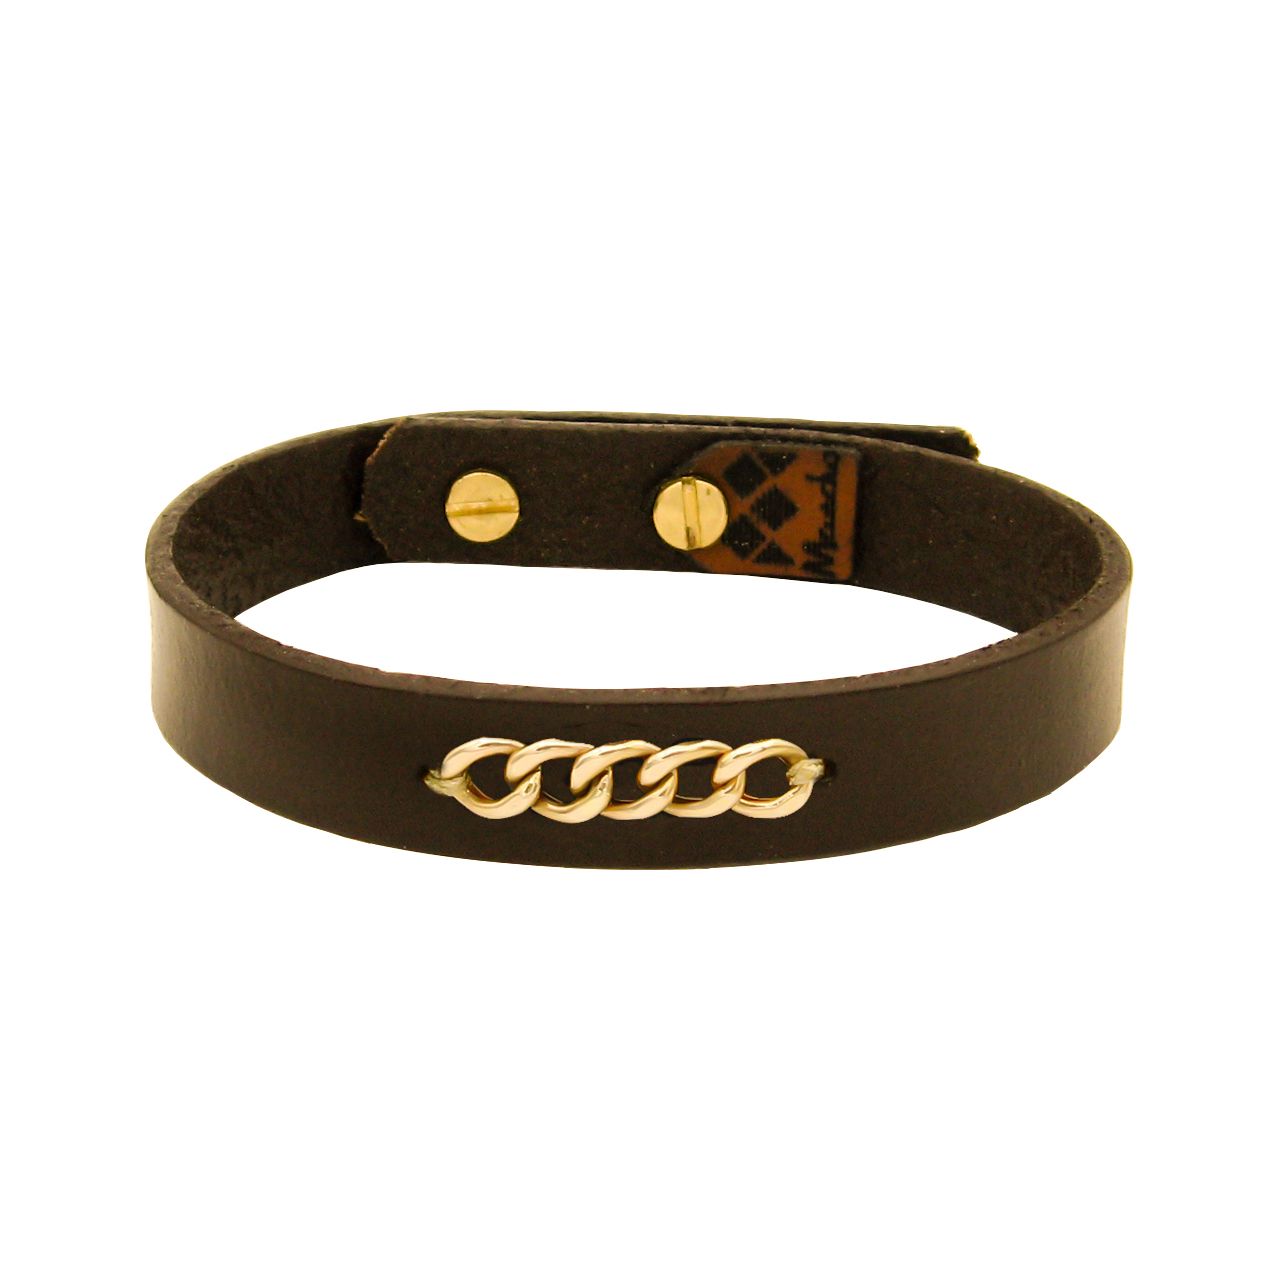  دستبند چرم و طلا 18 عیار مردانه مانچو مدل bfg245 -  - 1